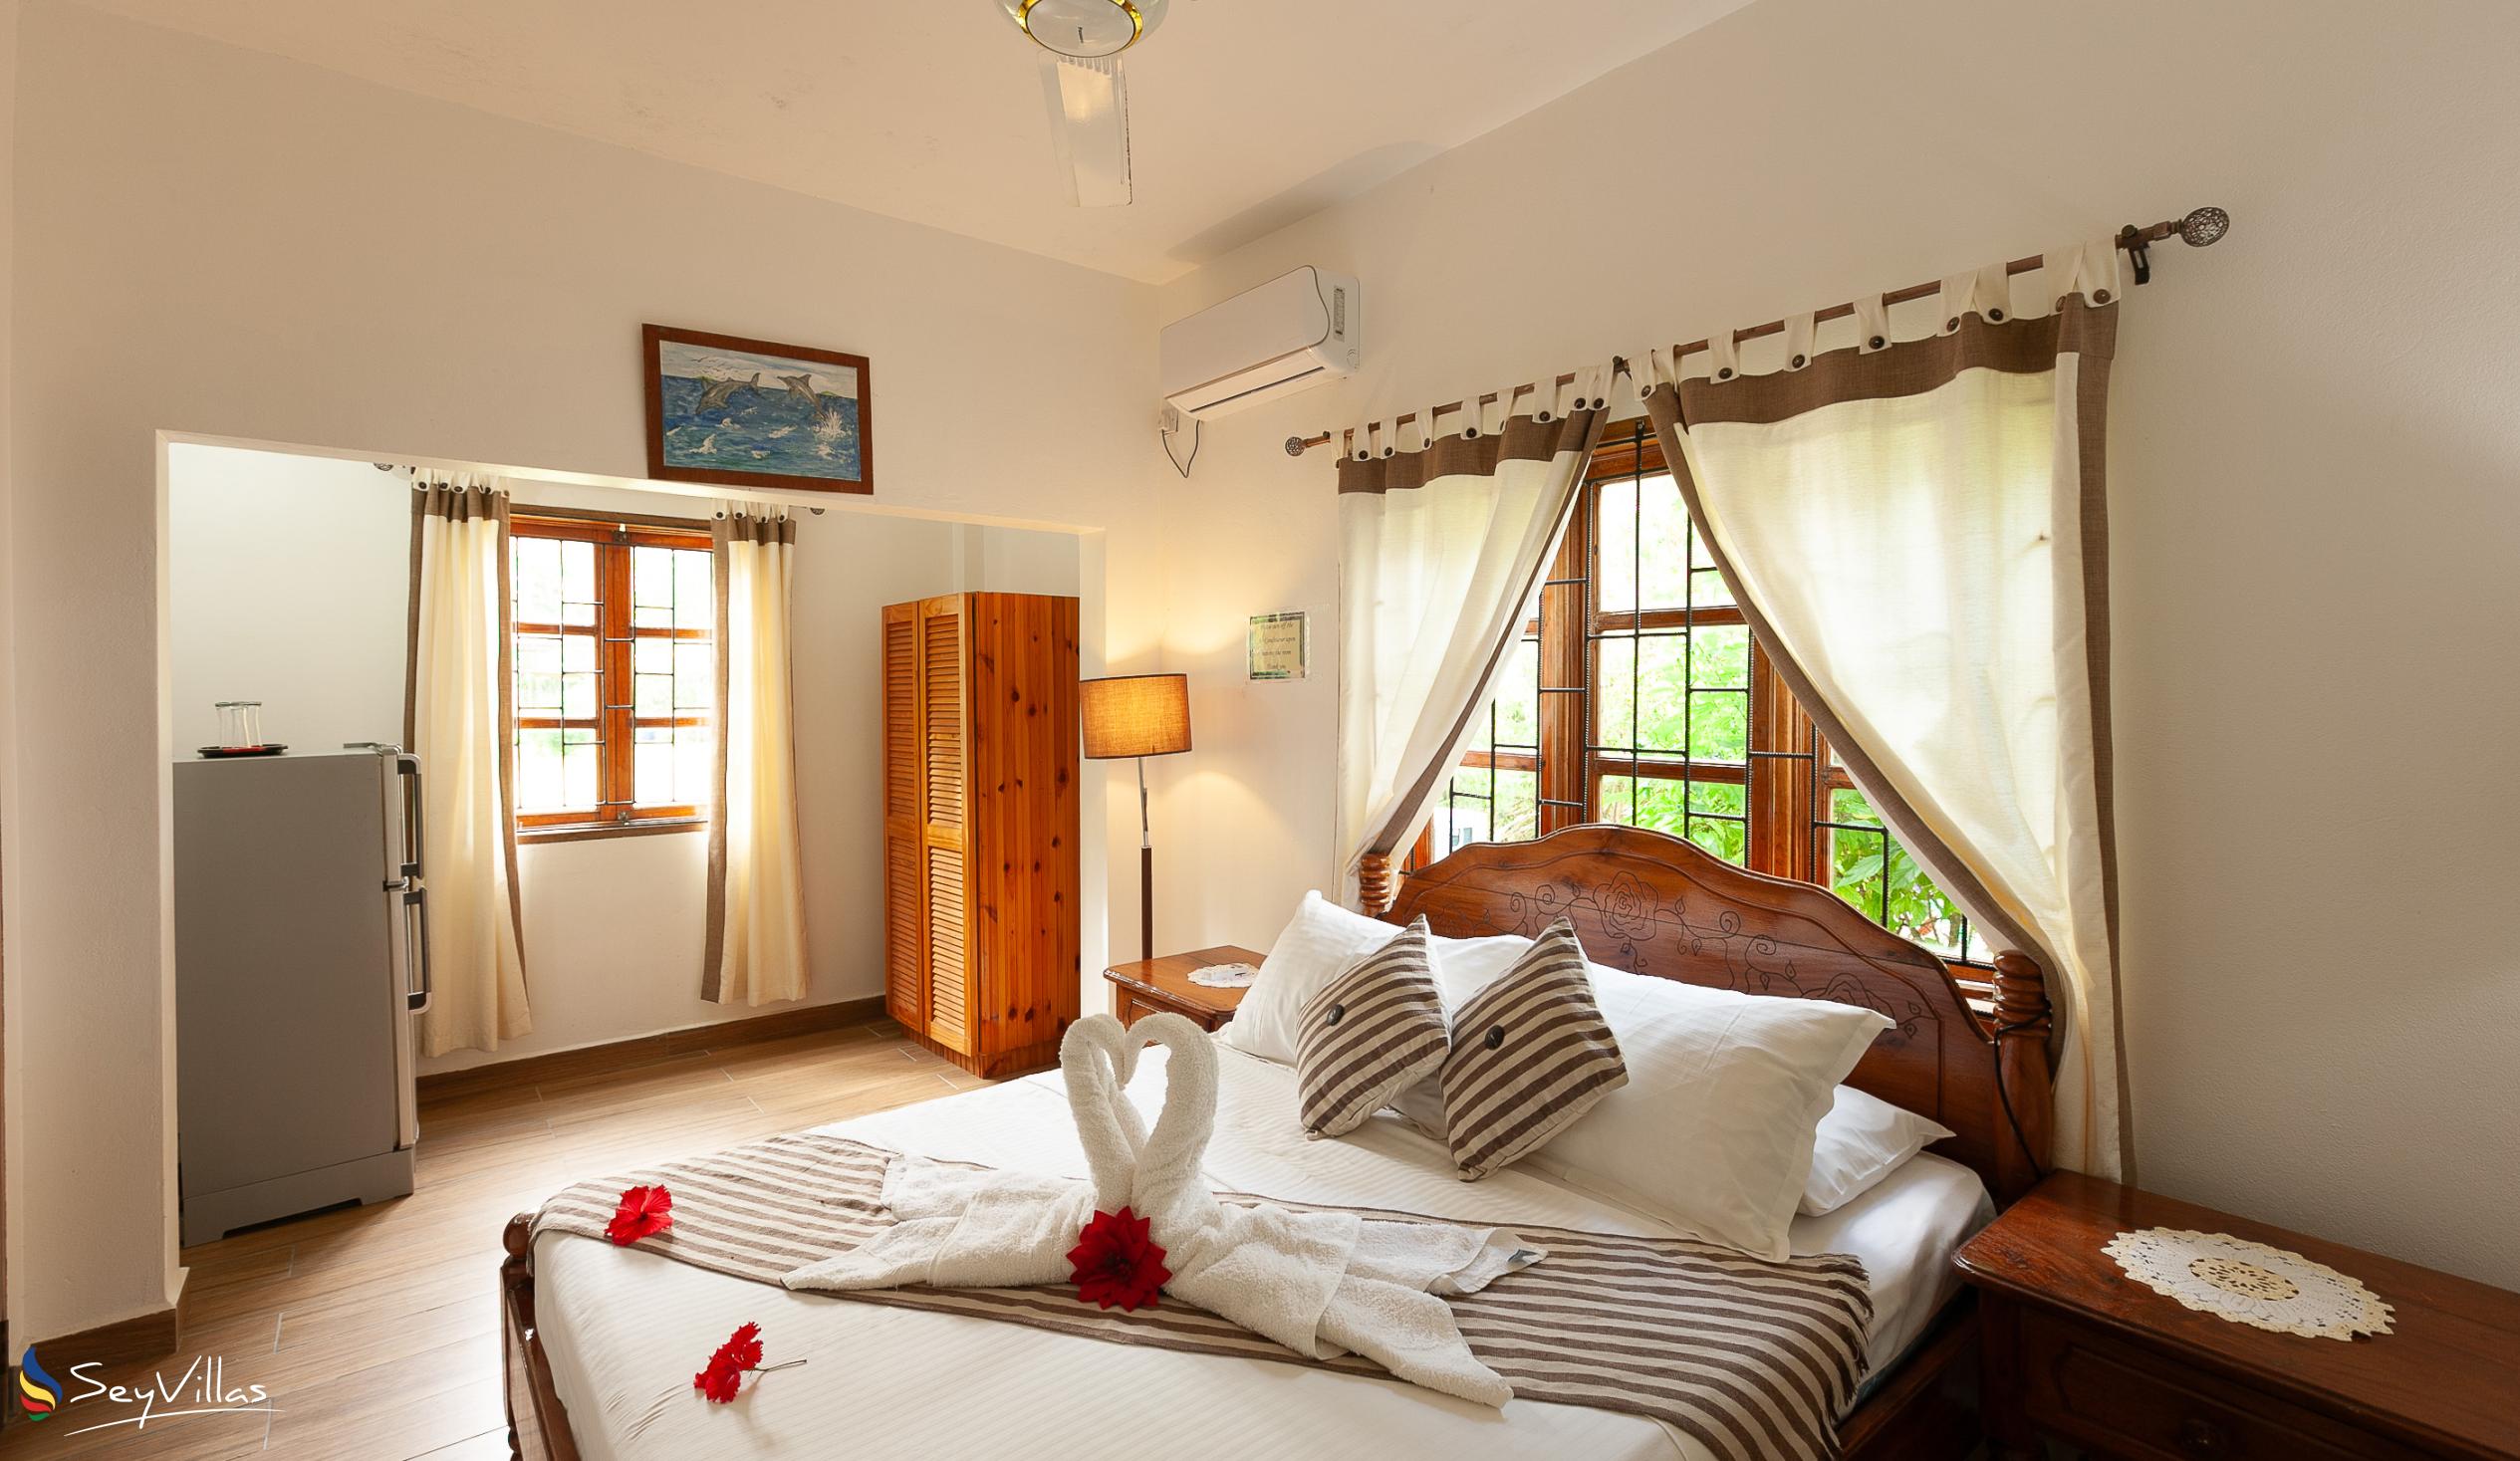 Foto 74: Tannette's Villa - Chambre Double Standard - La Digue (Seychelles)